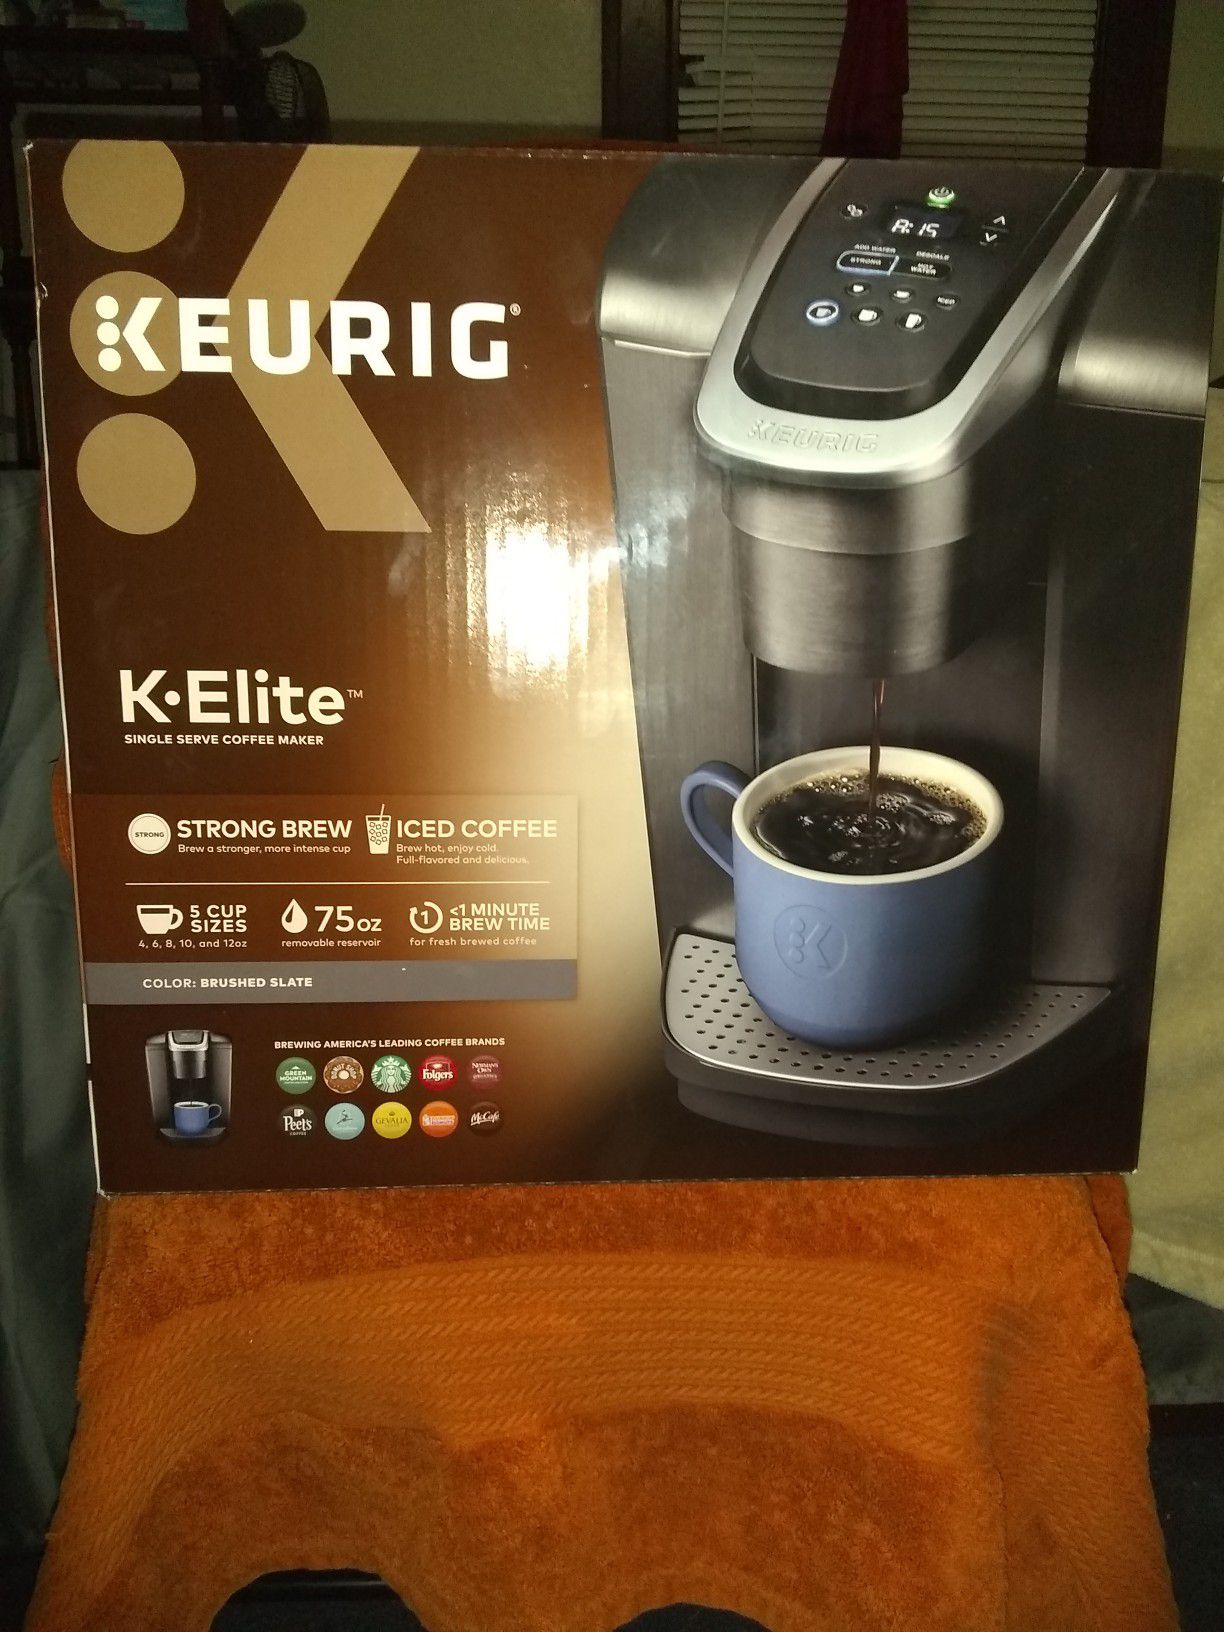 Keurig Coffee maker